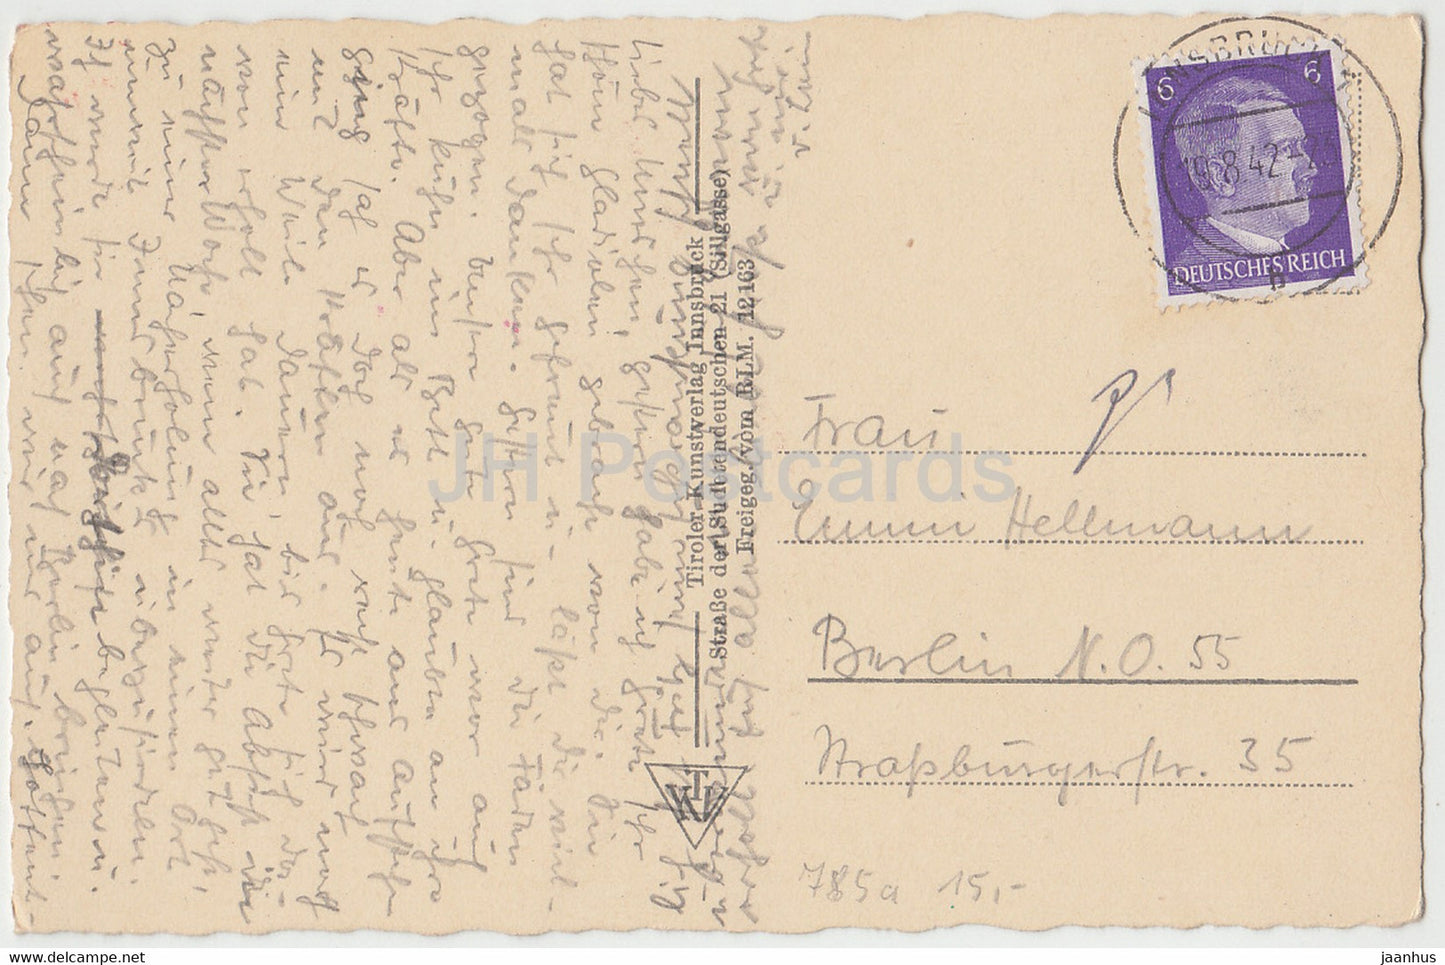 Innsbruck - Maria Theresienstraße m Annasäule - alte Postkarte - 1942 - Österreich - gebraucht